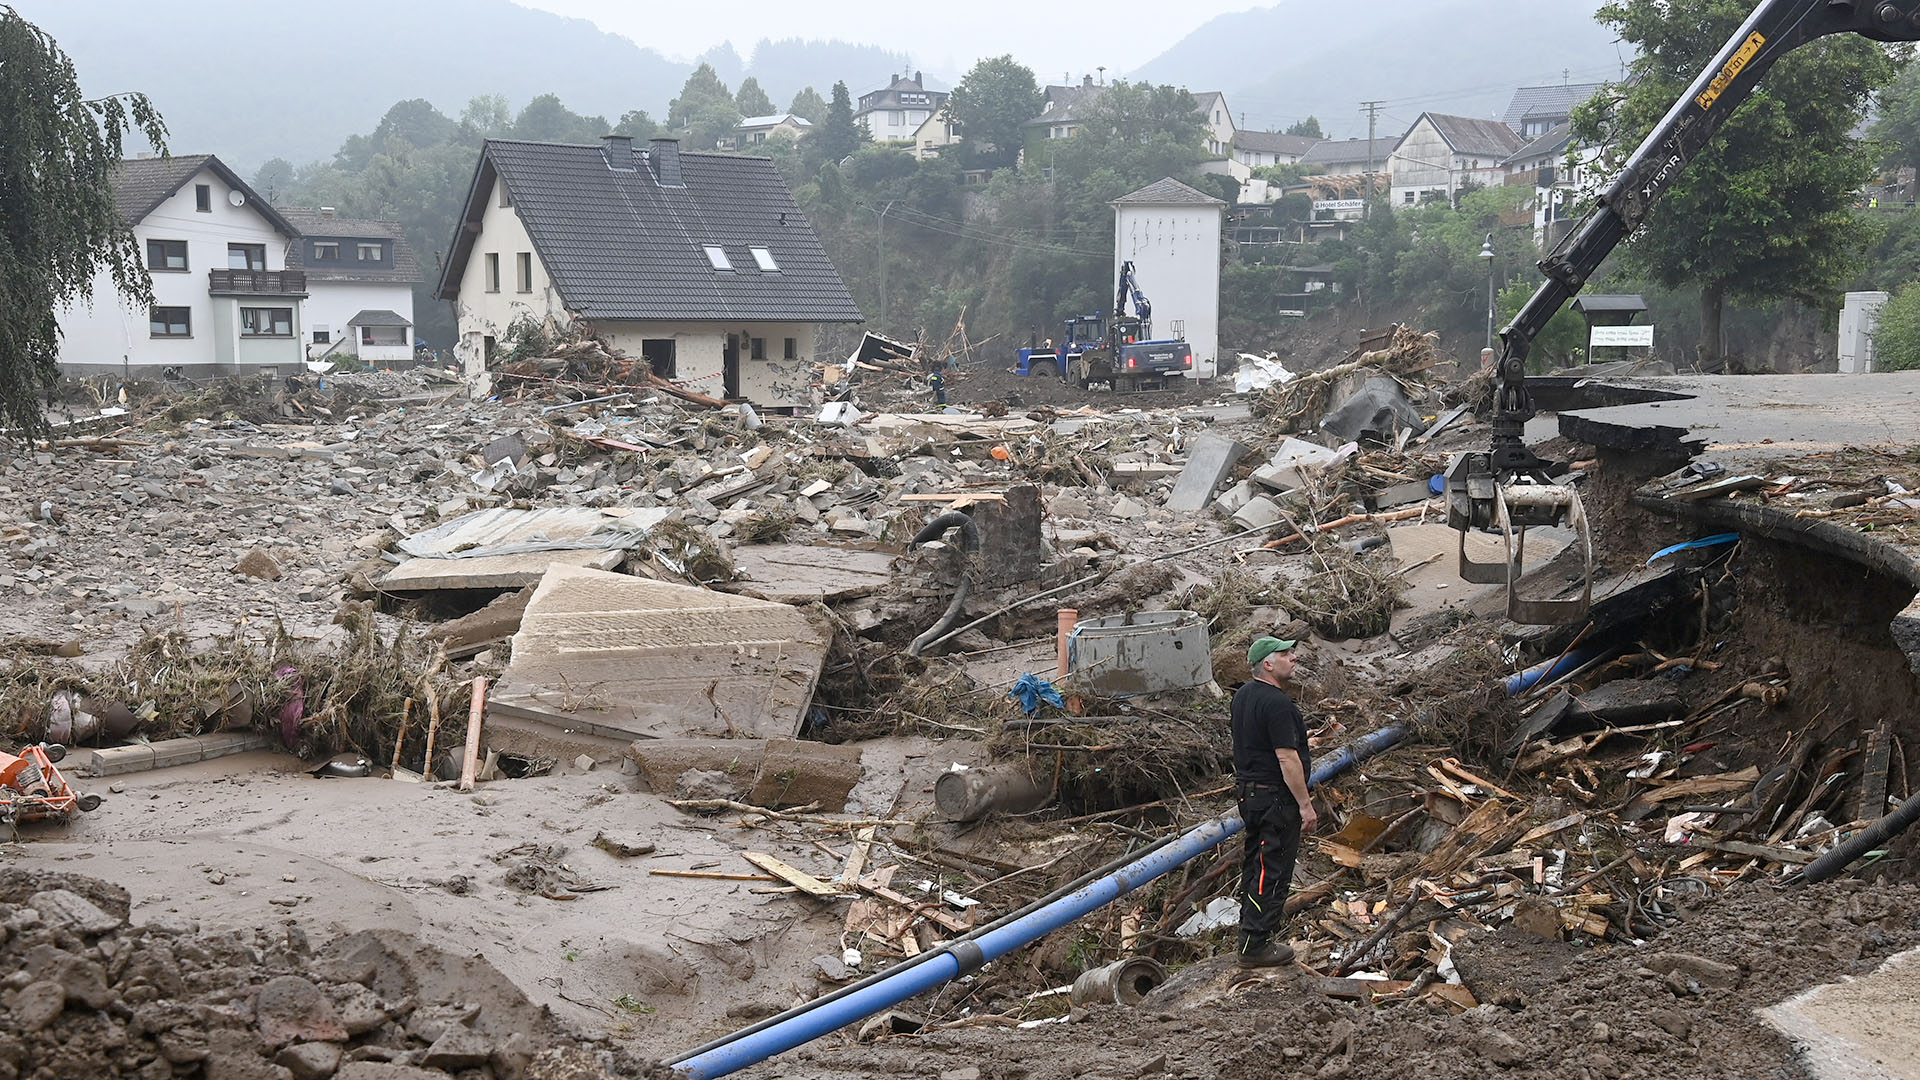 Un trabajador se encuentra entre los escombros durante el trabajo de limpieza después de que las inundaciones causaron daños importantes en Schuld, cerca de Bad Neuenahr-Ahrweiler, en el oeste de Alemania